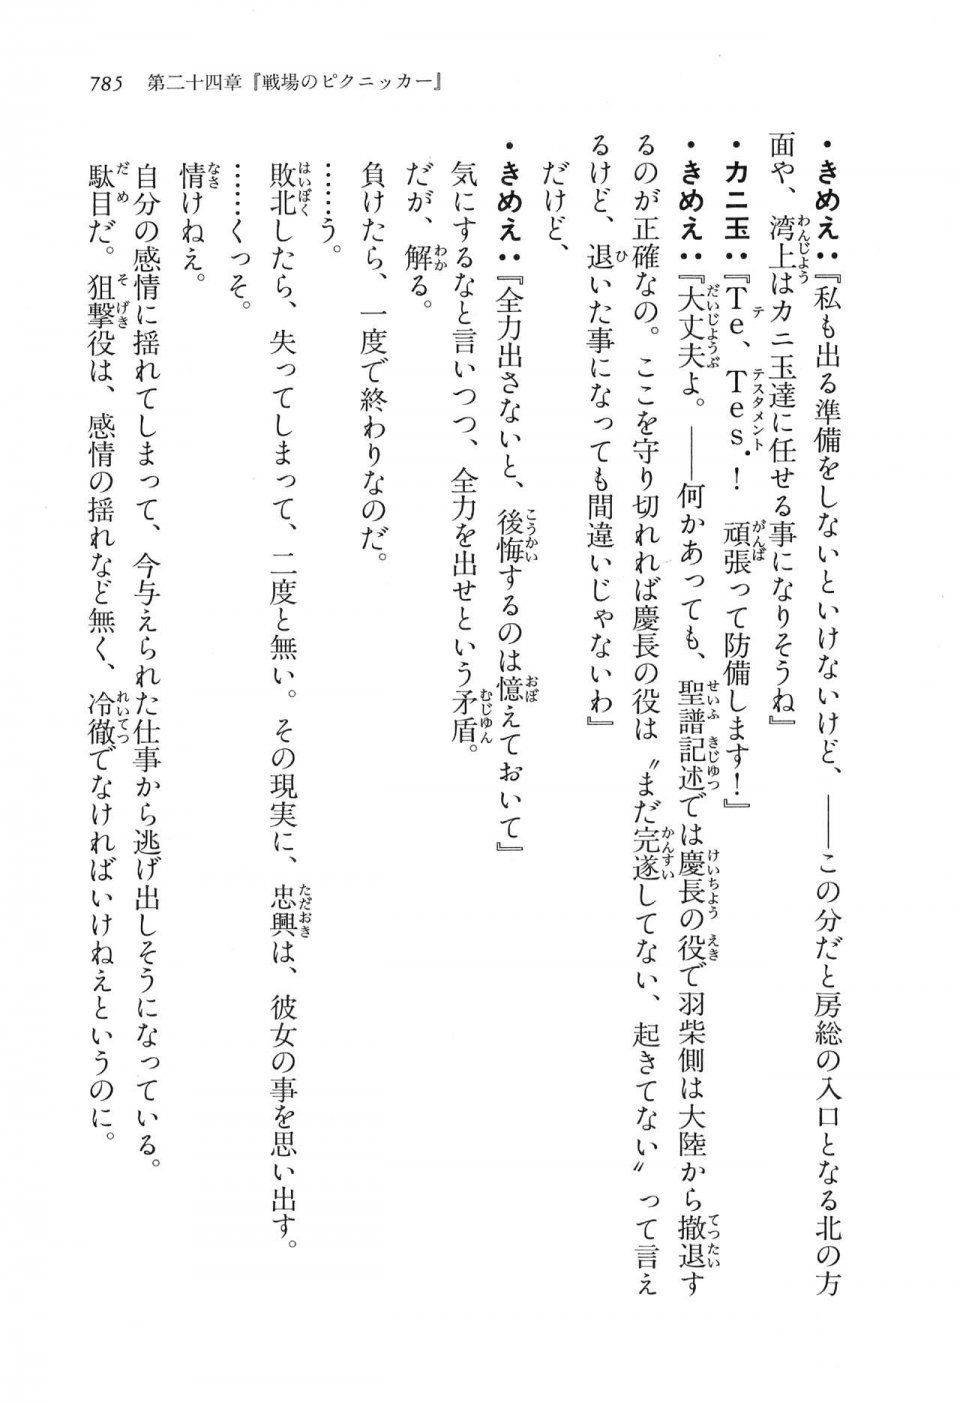 Kyoukai Senjou no Horizon LN Vol 16(7A) - Photo #785